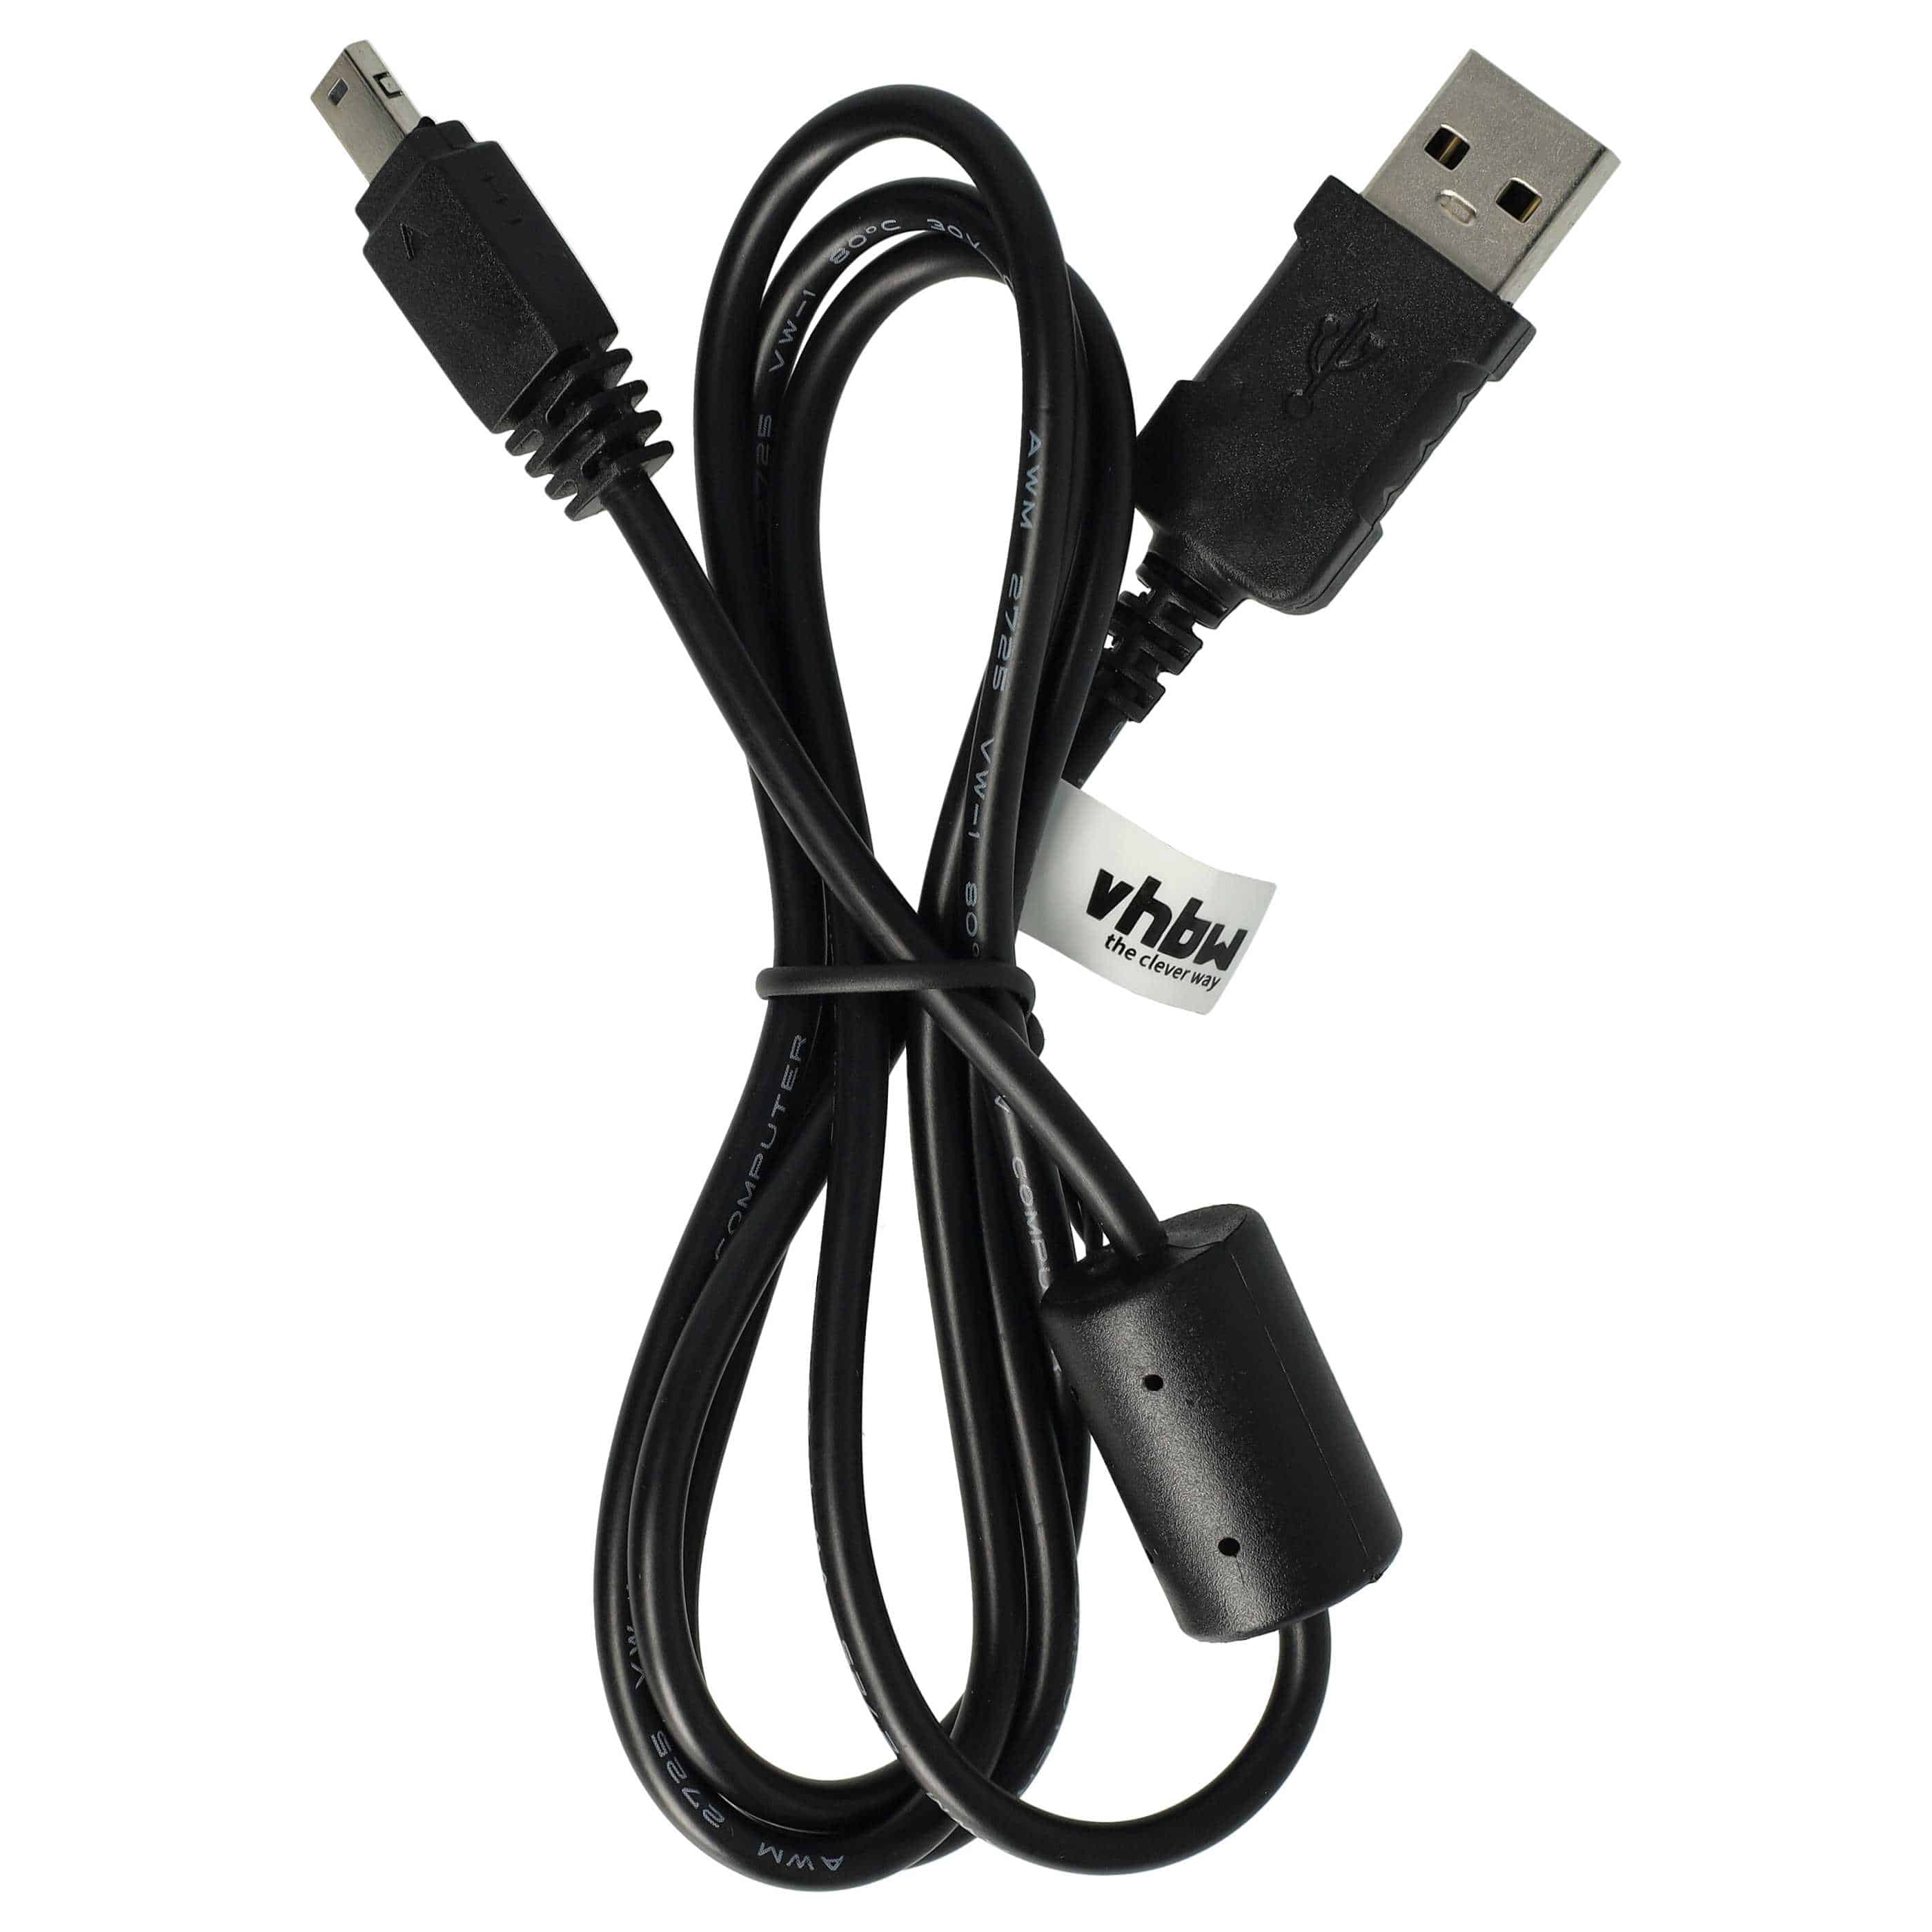 Cavo dati USB sostituisce Casio U-8, EMC-6U, EMC-6 per fotocamera, camcorder Casio - 100 cm